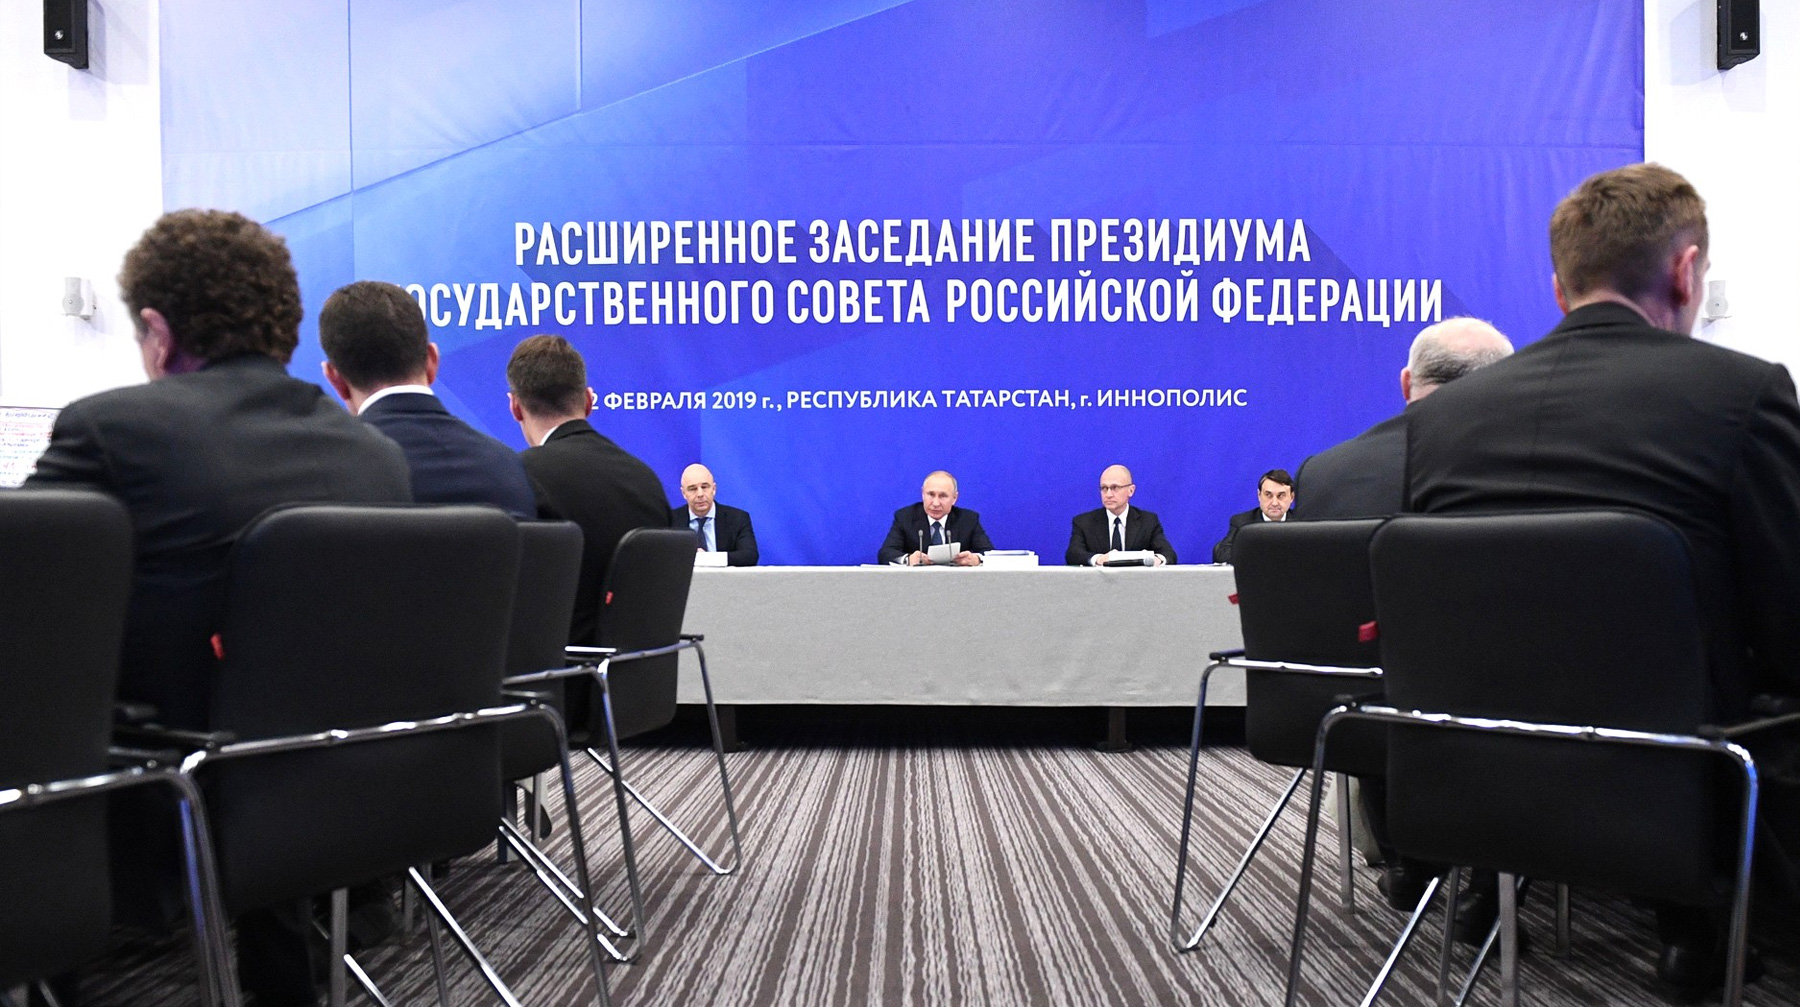 Президент РФ после своего выступления предоставил слово главе Татарстана, однако его не было в зале Фото: © kremlin.ru